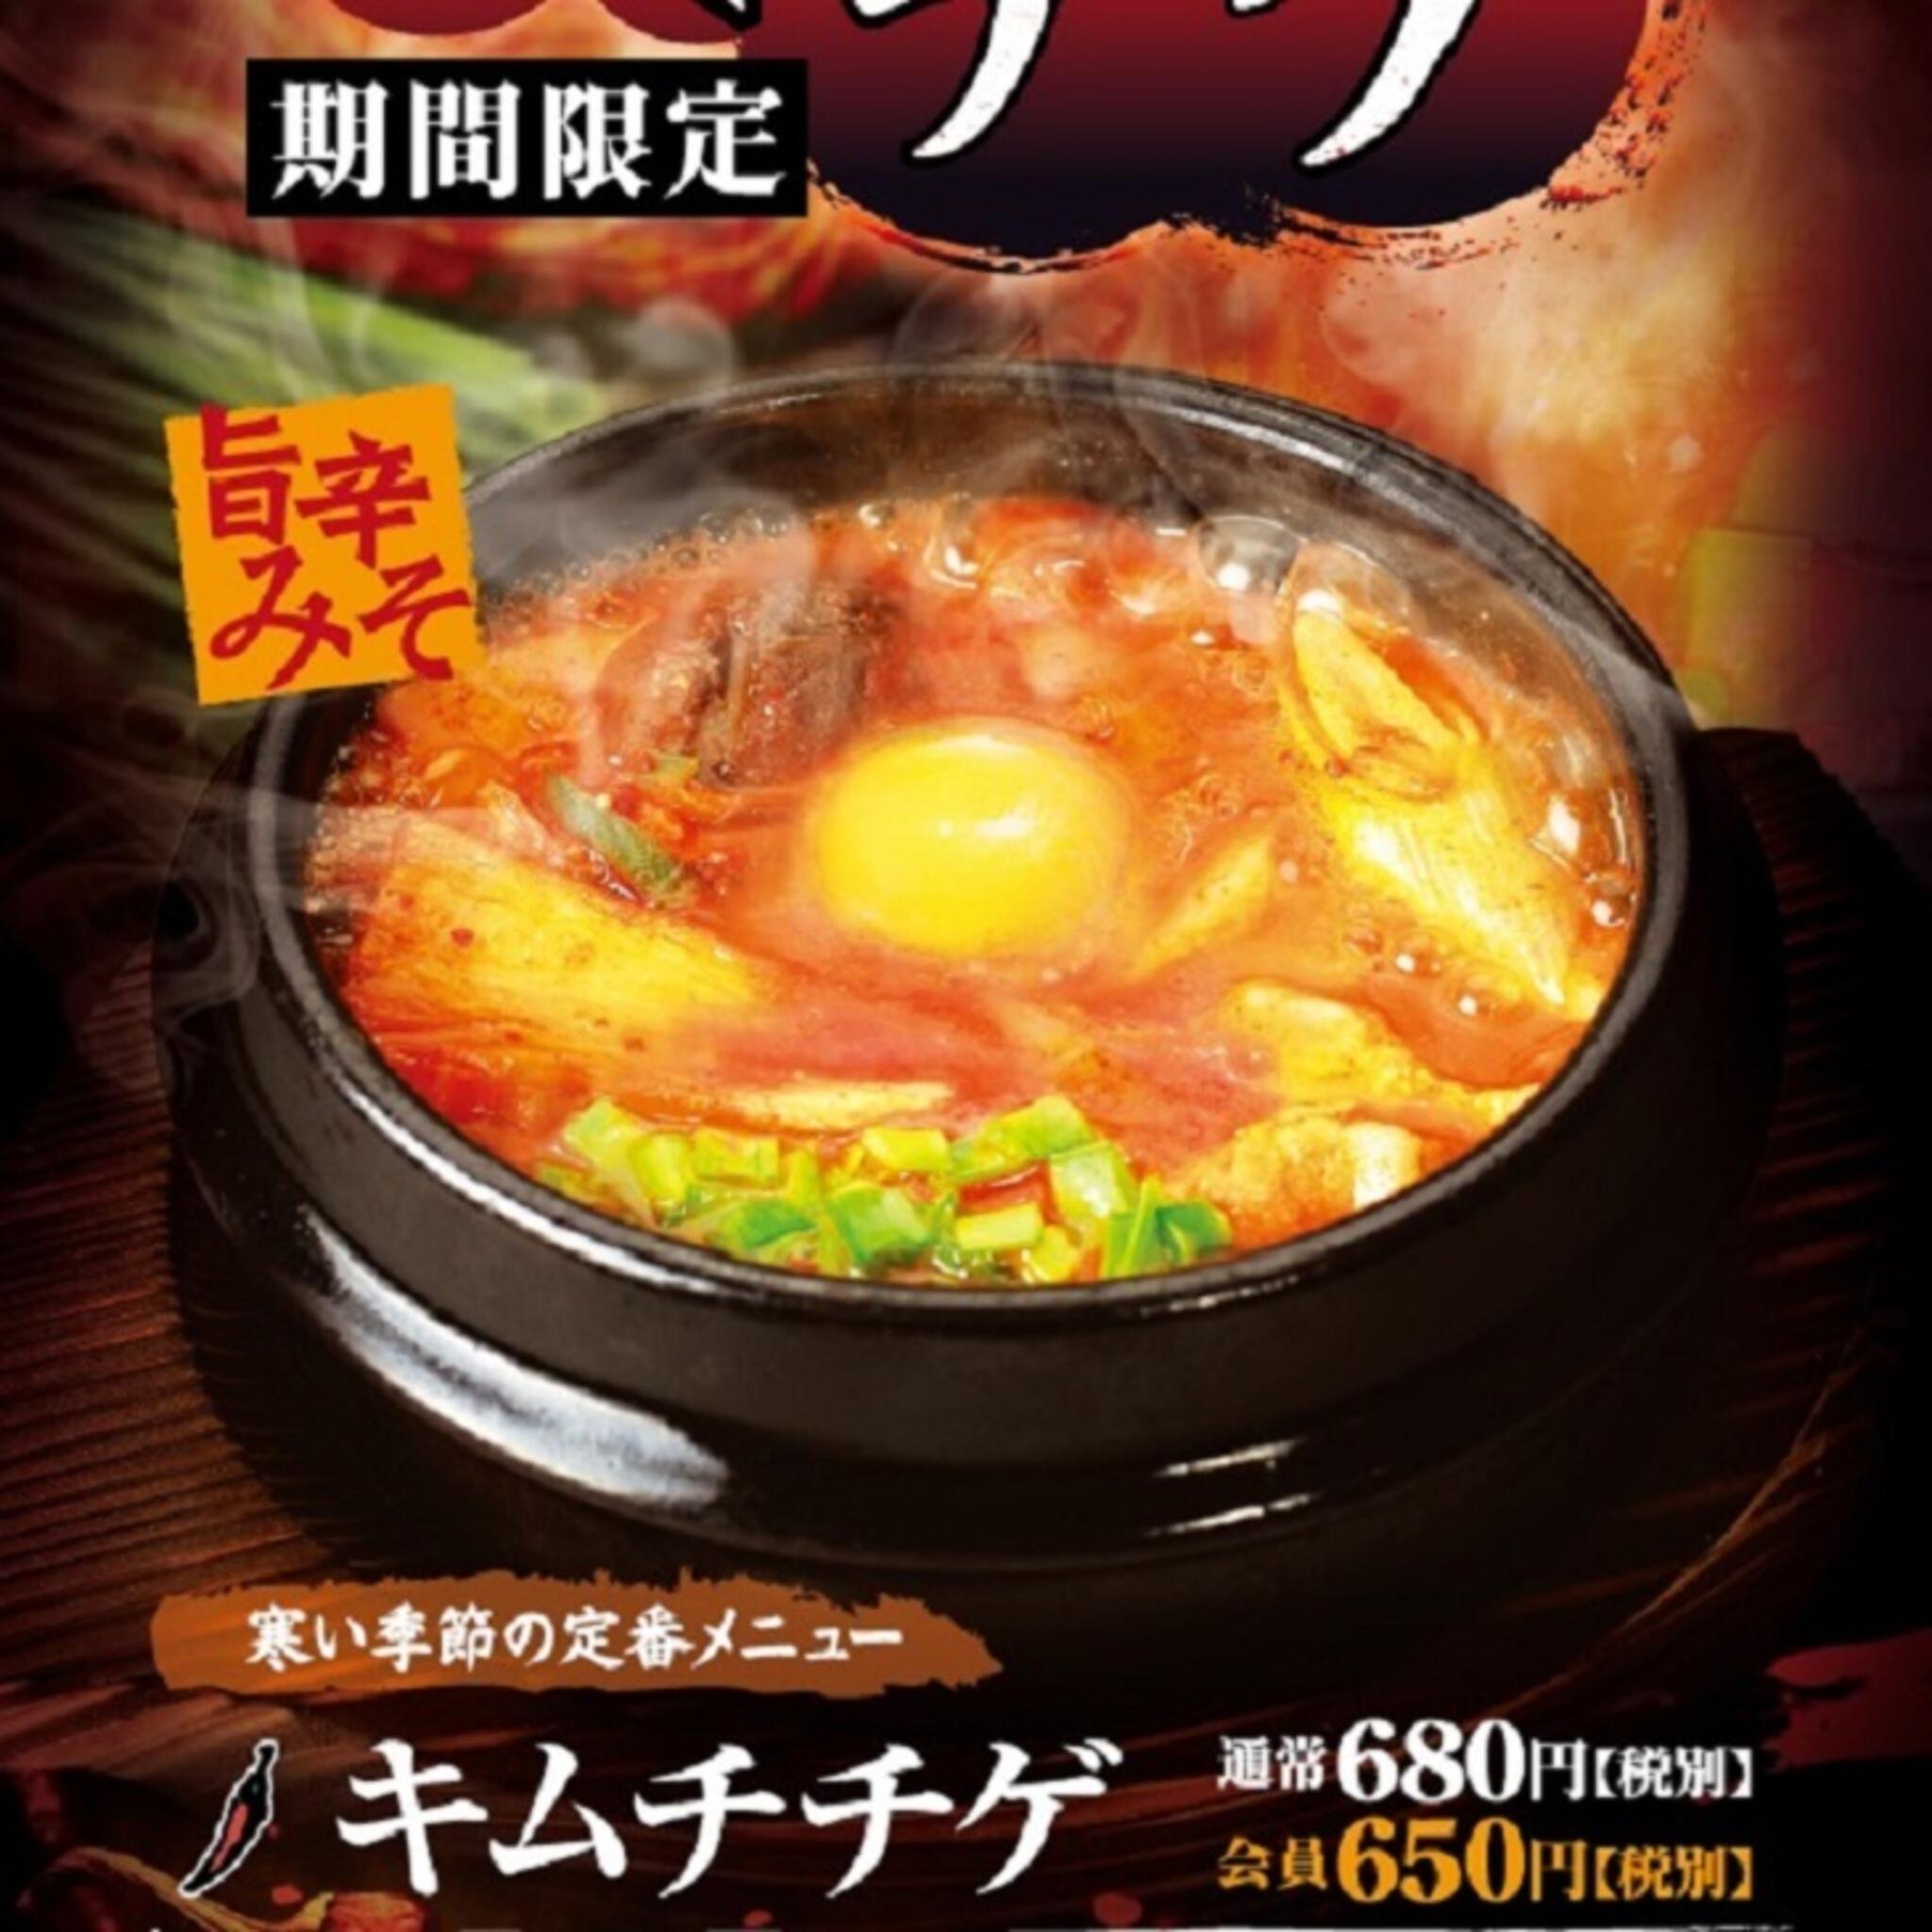 焼肉冷麺やまなか家 西多賀店からのお知らせ(🌶🍲寒い季節の定番メニュー🌶🍲【キムチチゲ】 期間限定です❕❕)に関する写真